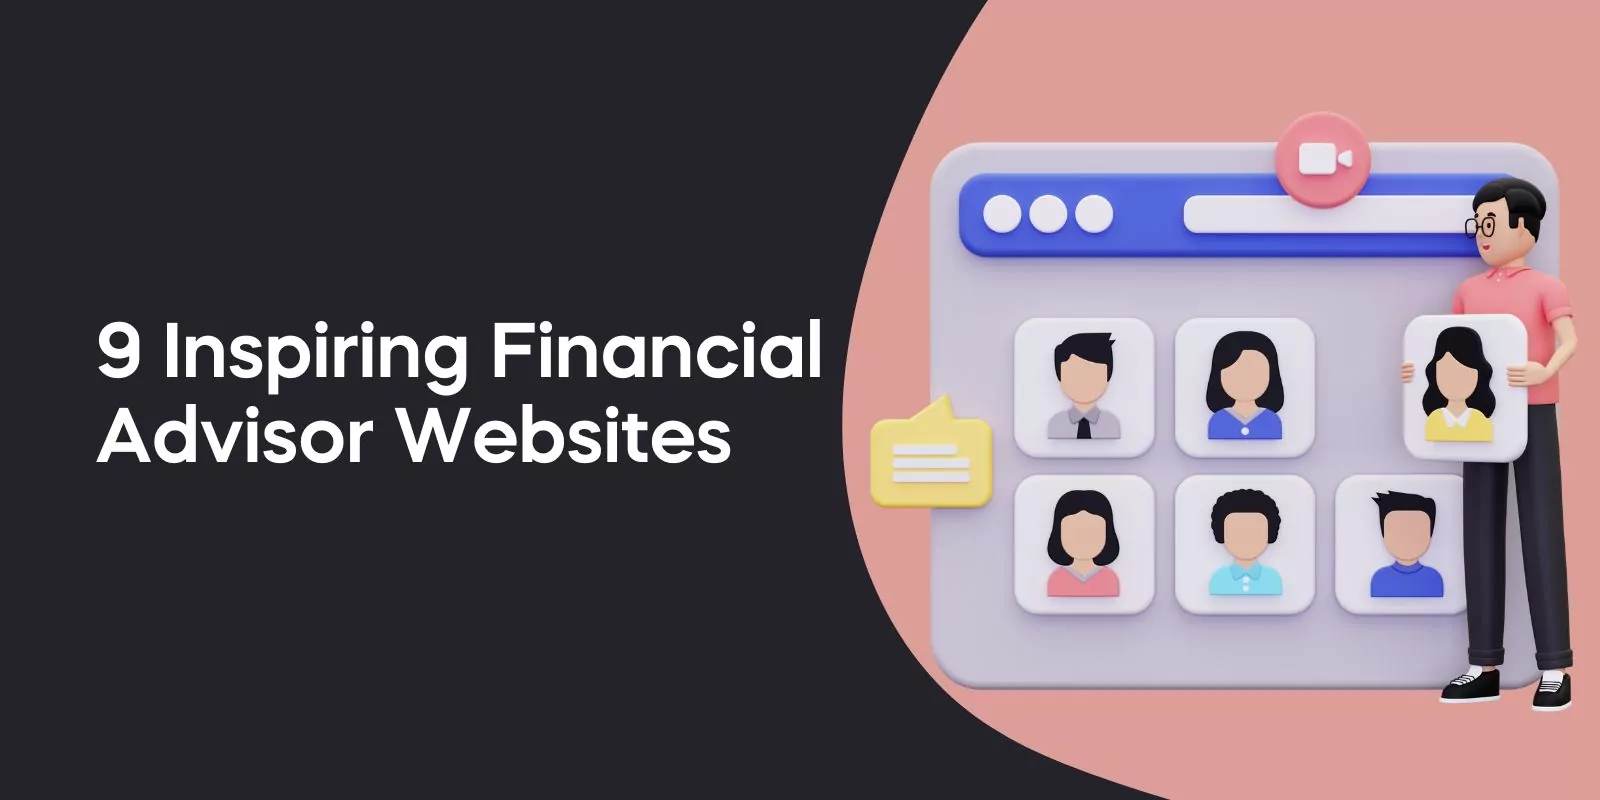 9 Inspiring Financial Advisor Websites